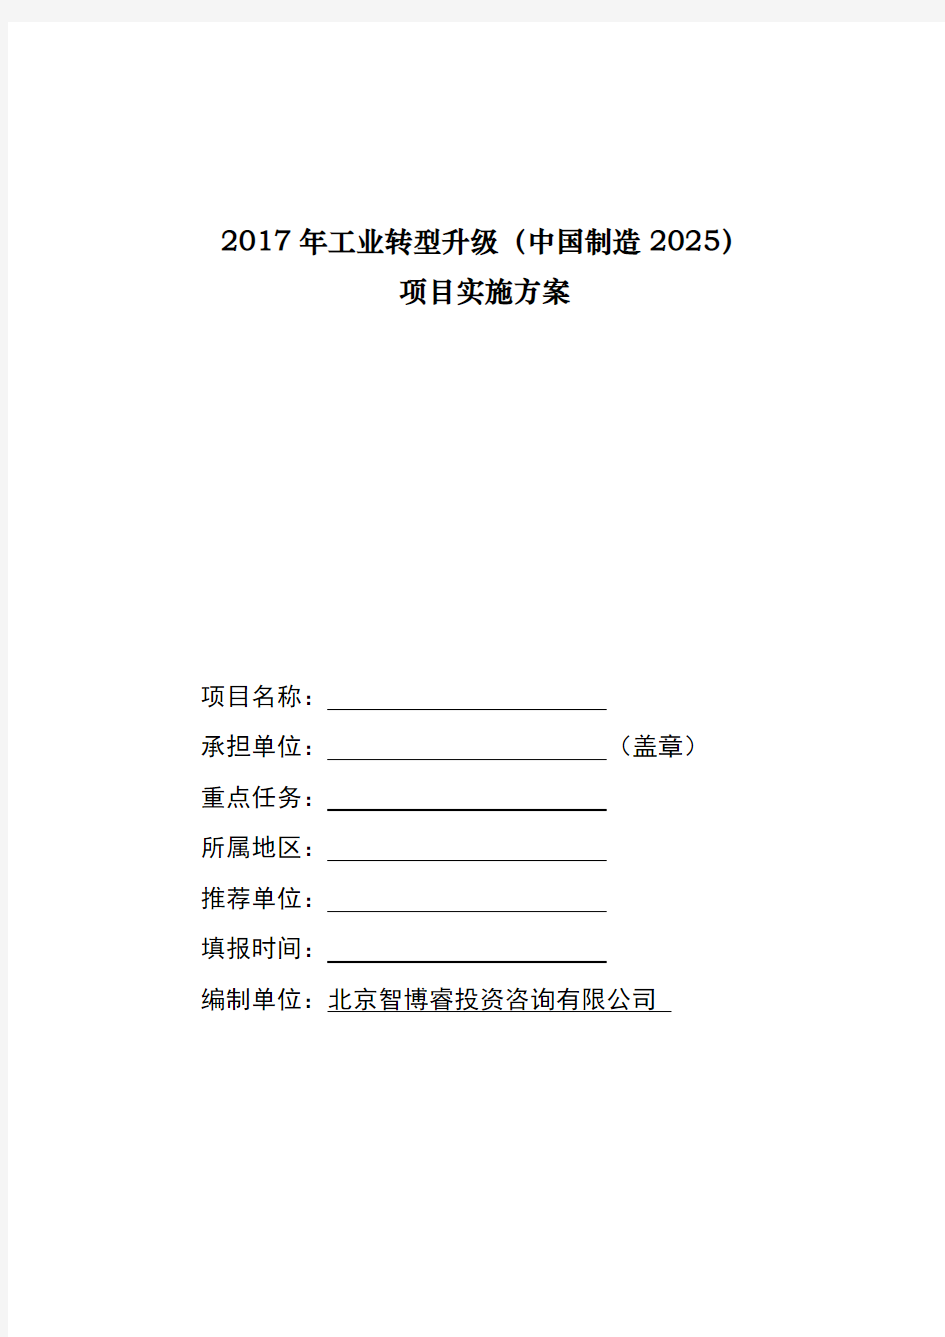 2017年工业转型升级(中国制造2025)项目实施方案(编制大纲)